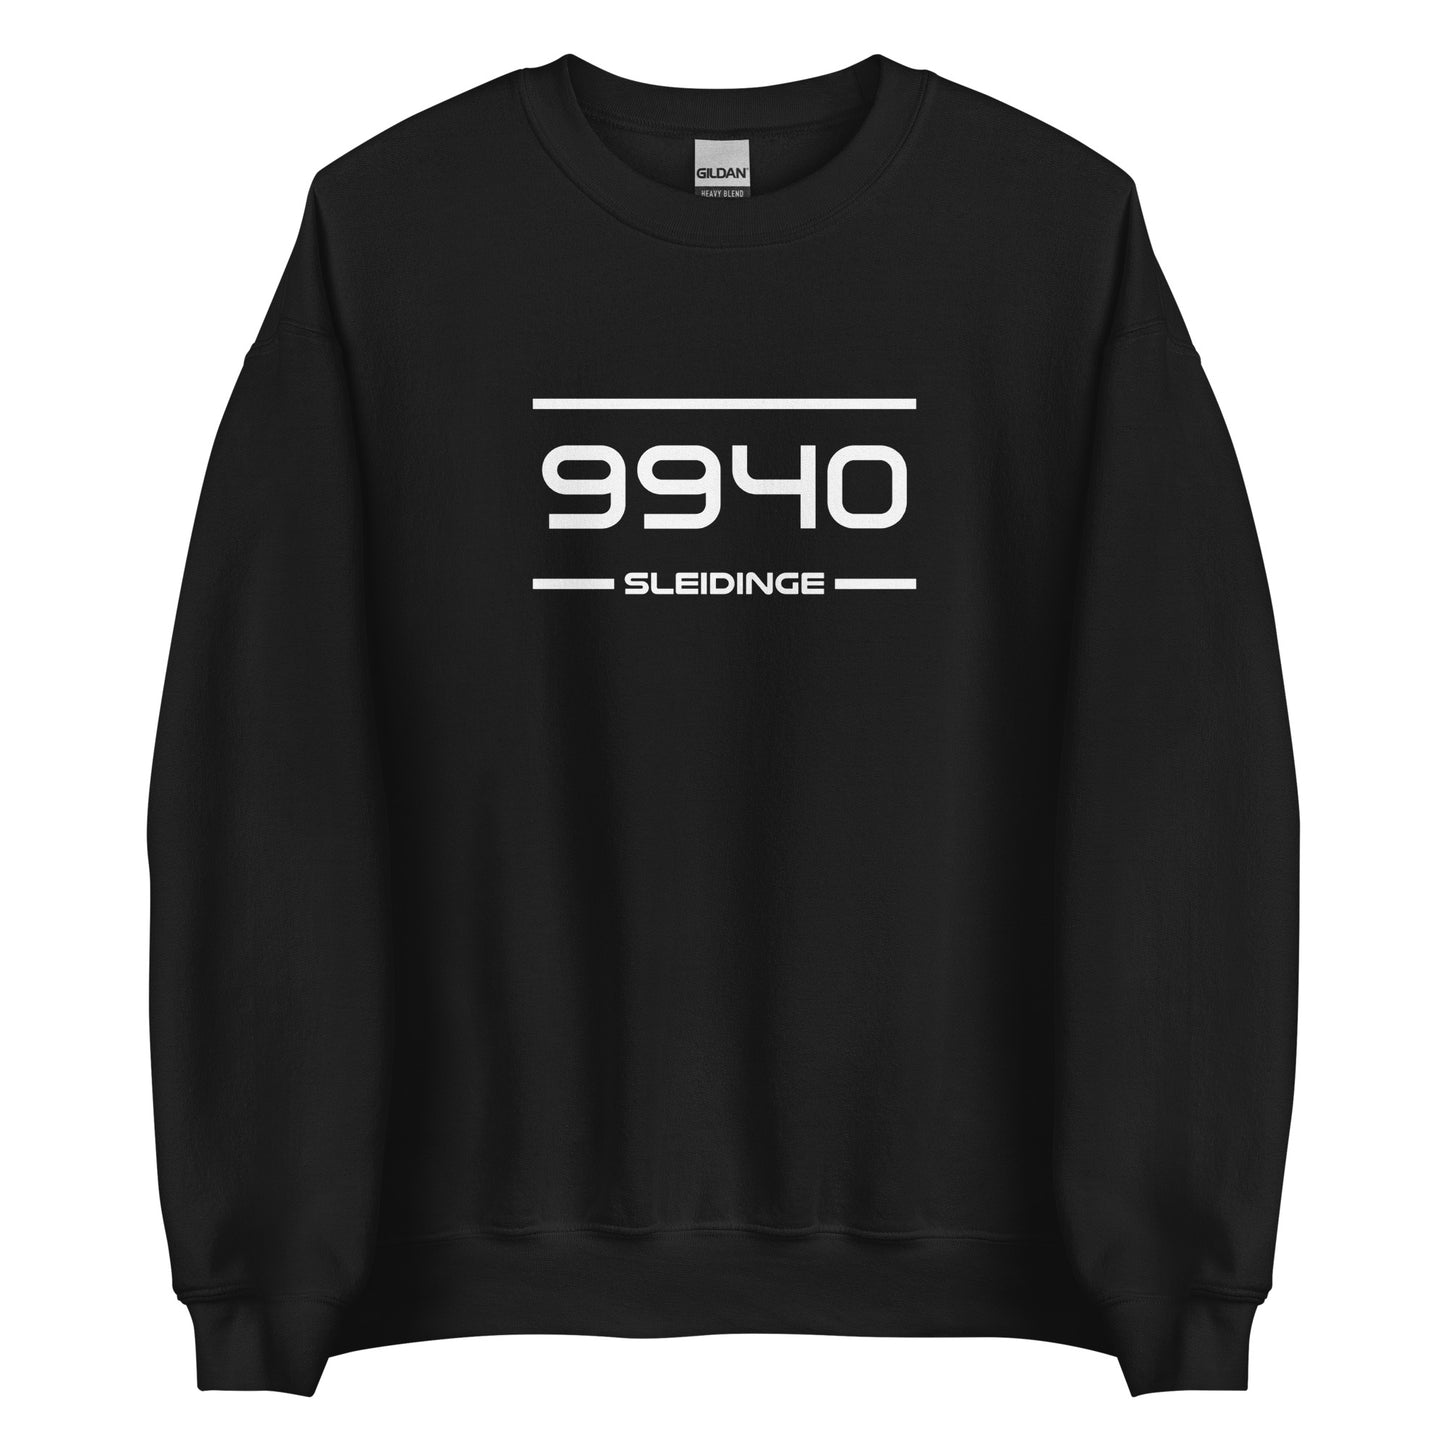 Sweater - 9940 - Sleidinge (M/V)